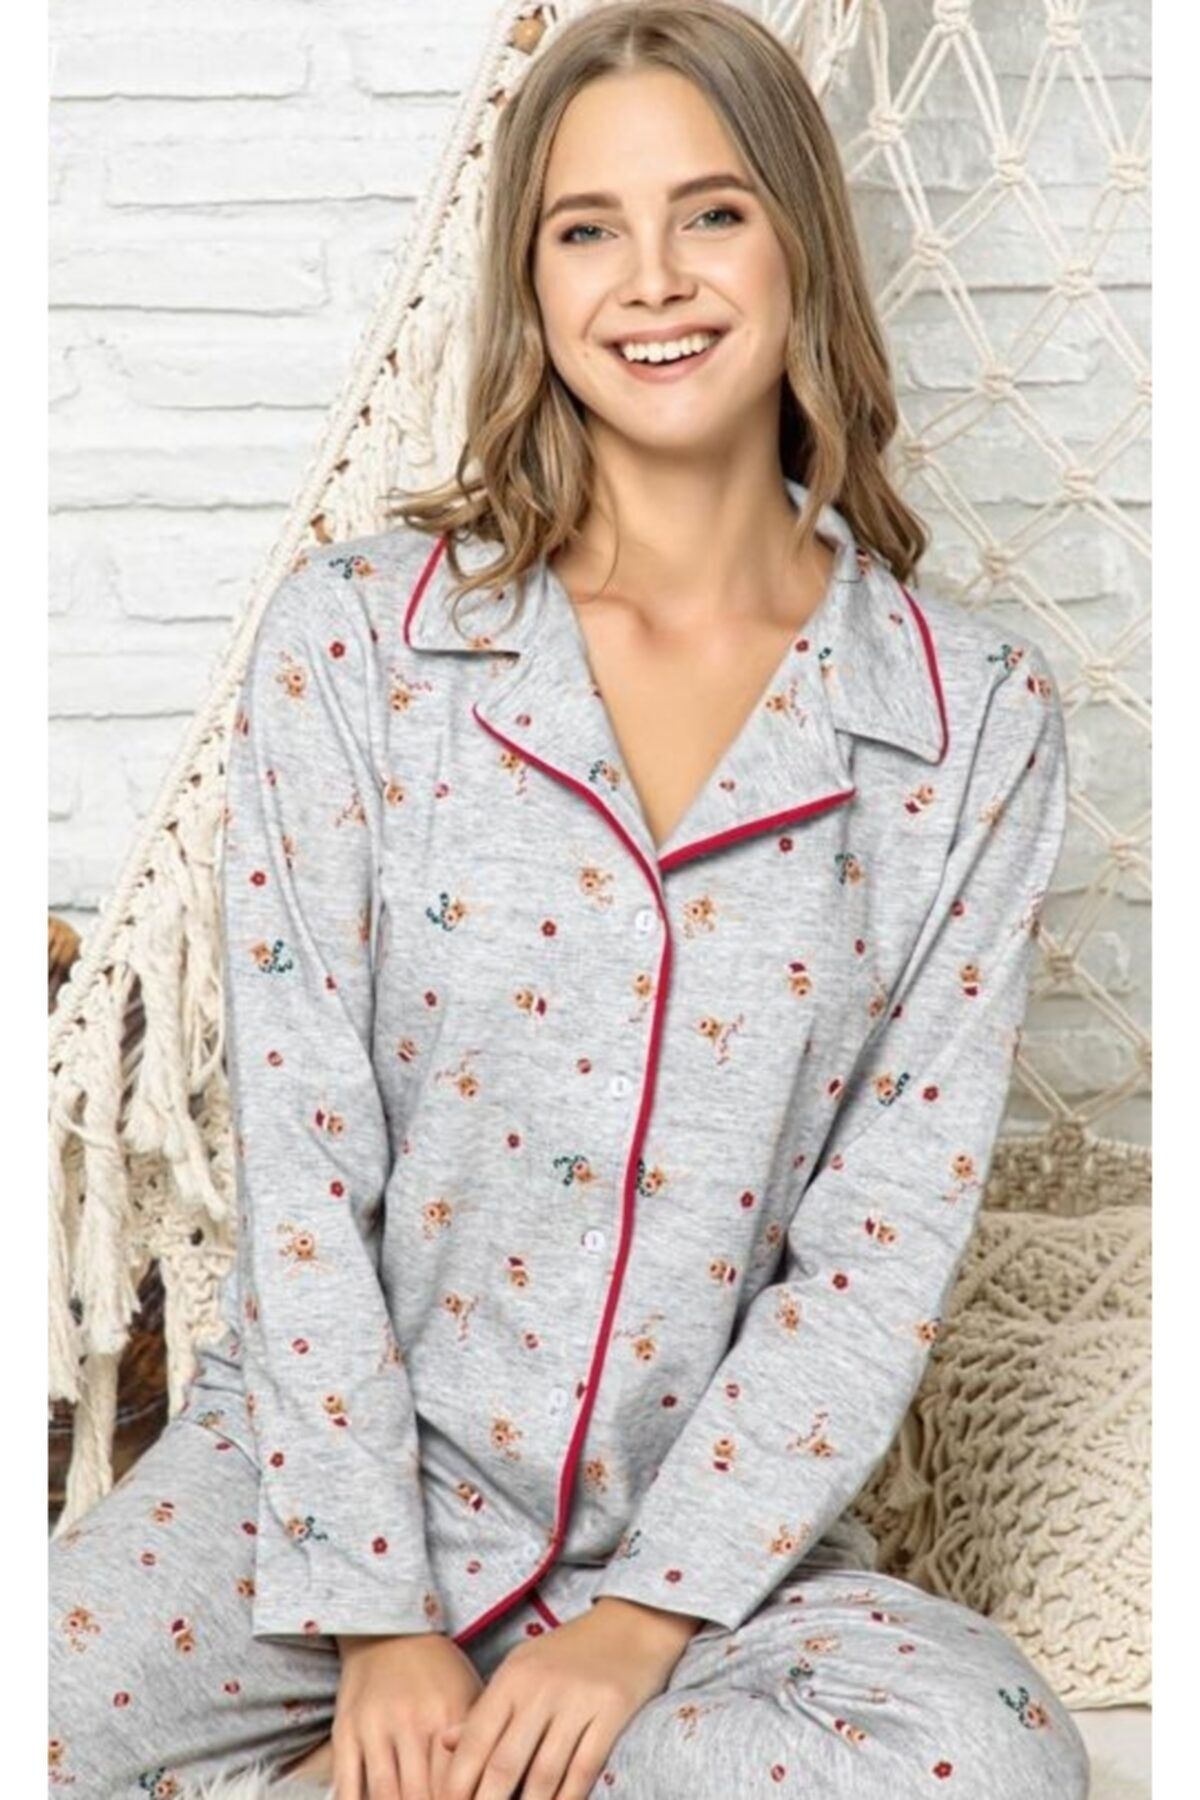 PİJAMANJERO Yeni Yıl Ren Geyikli Gri Düğmeli Pijama Takımı